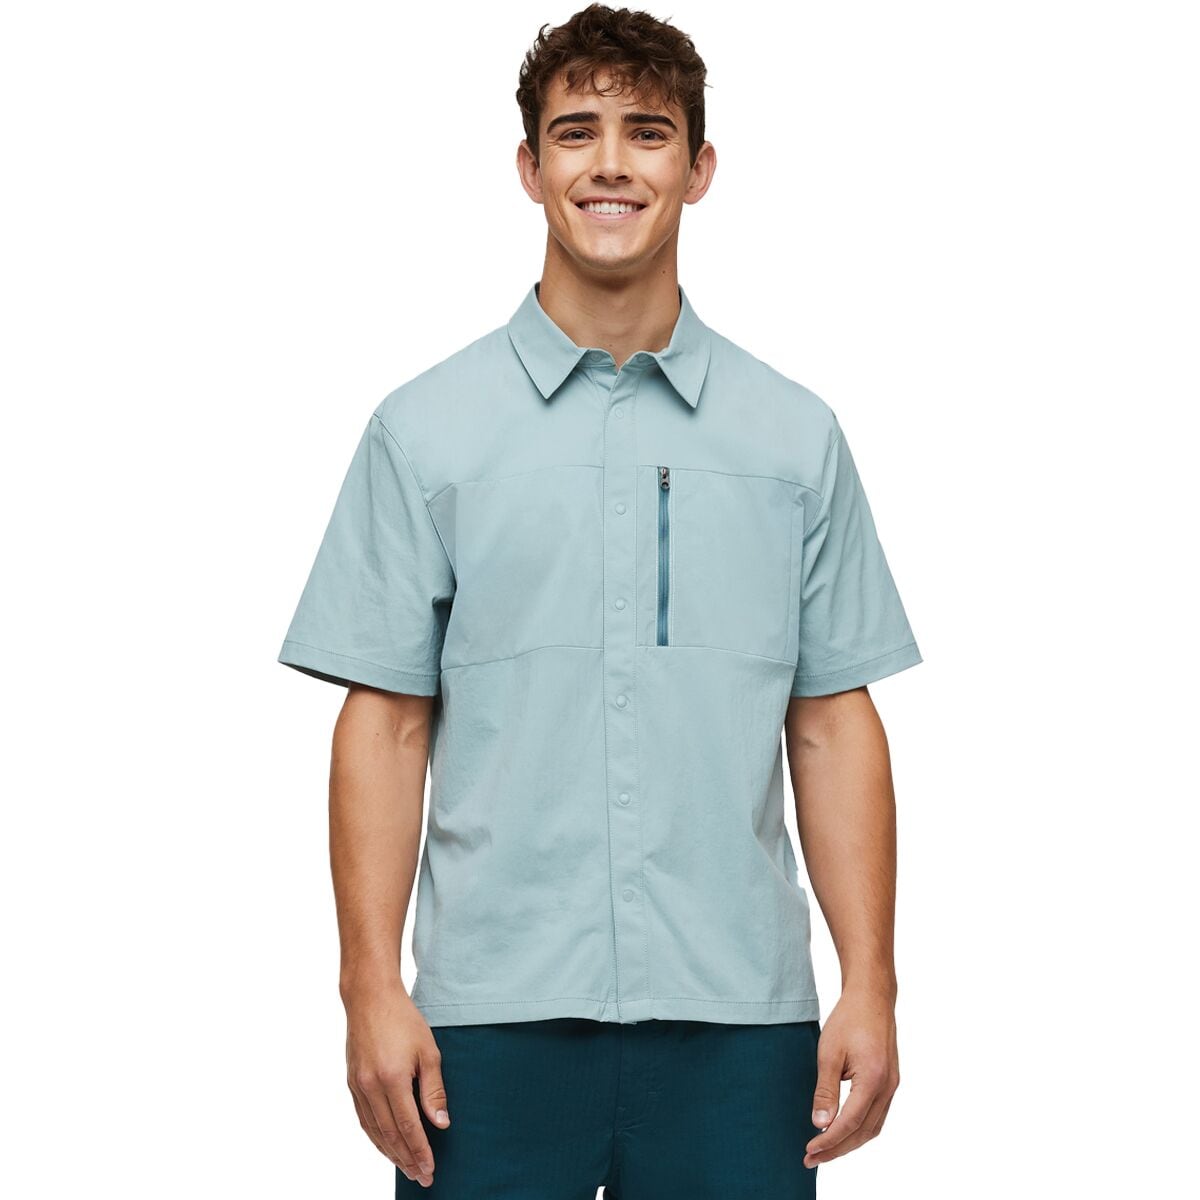 Sumaco Short-Sleeve Shirt - Men